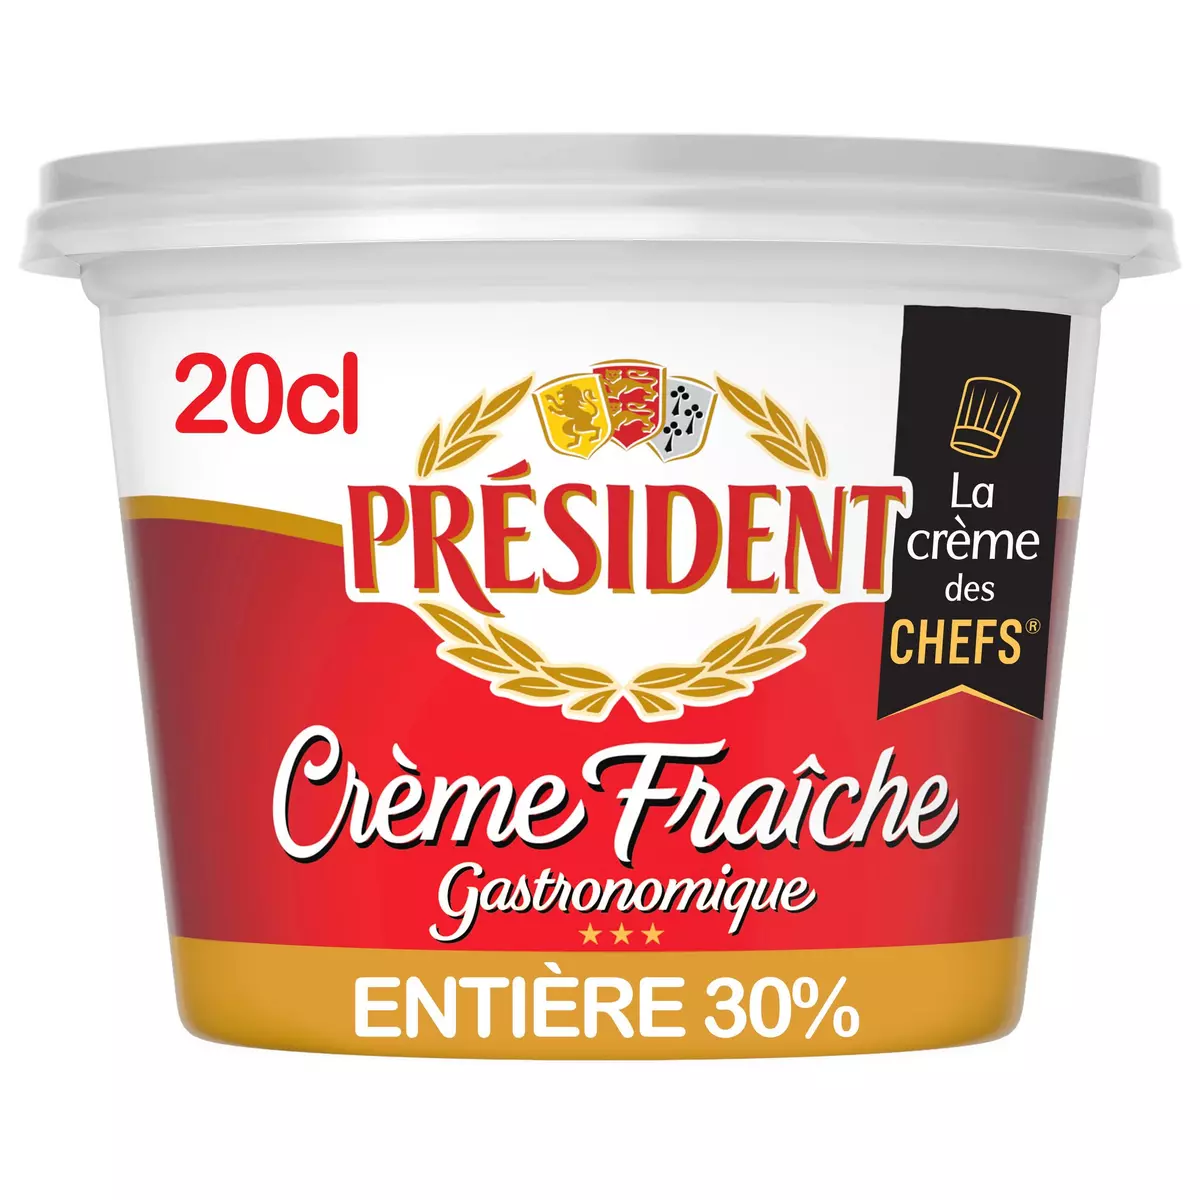 PRESIDENT Crème fraîche épaisse entière gastronomique 20cl